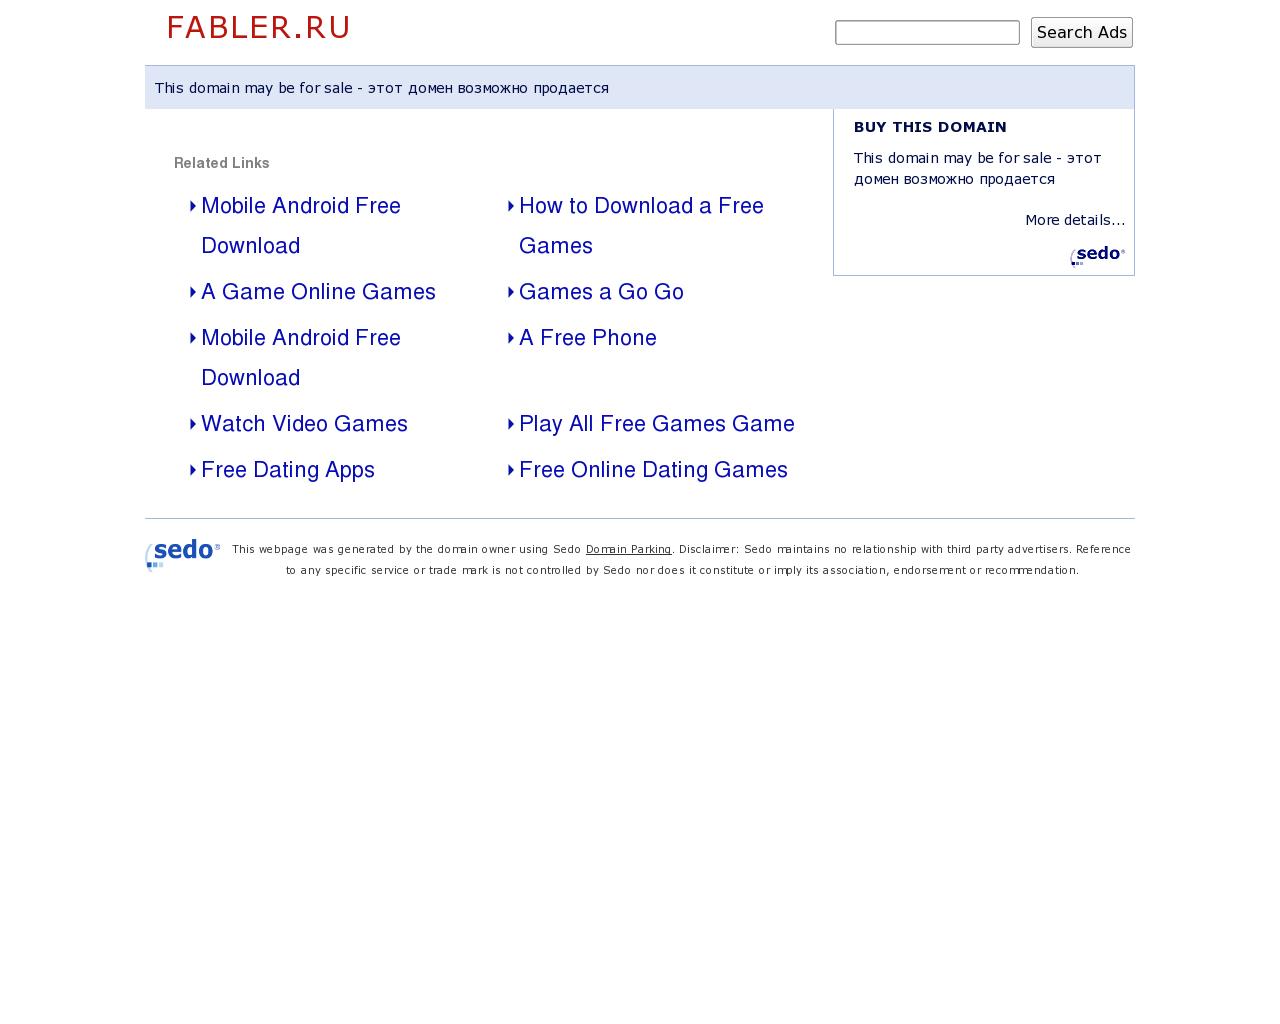 Изображение сайта fabler.ru в разрешении 1280x1024